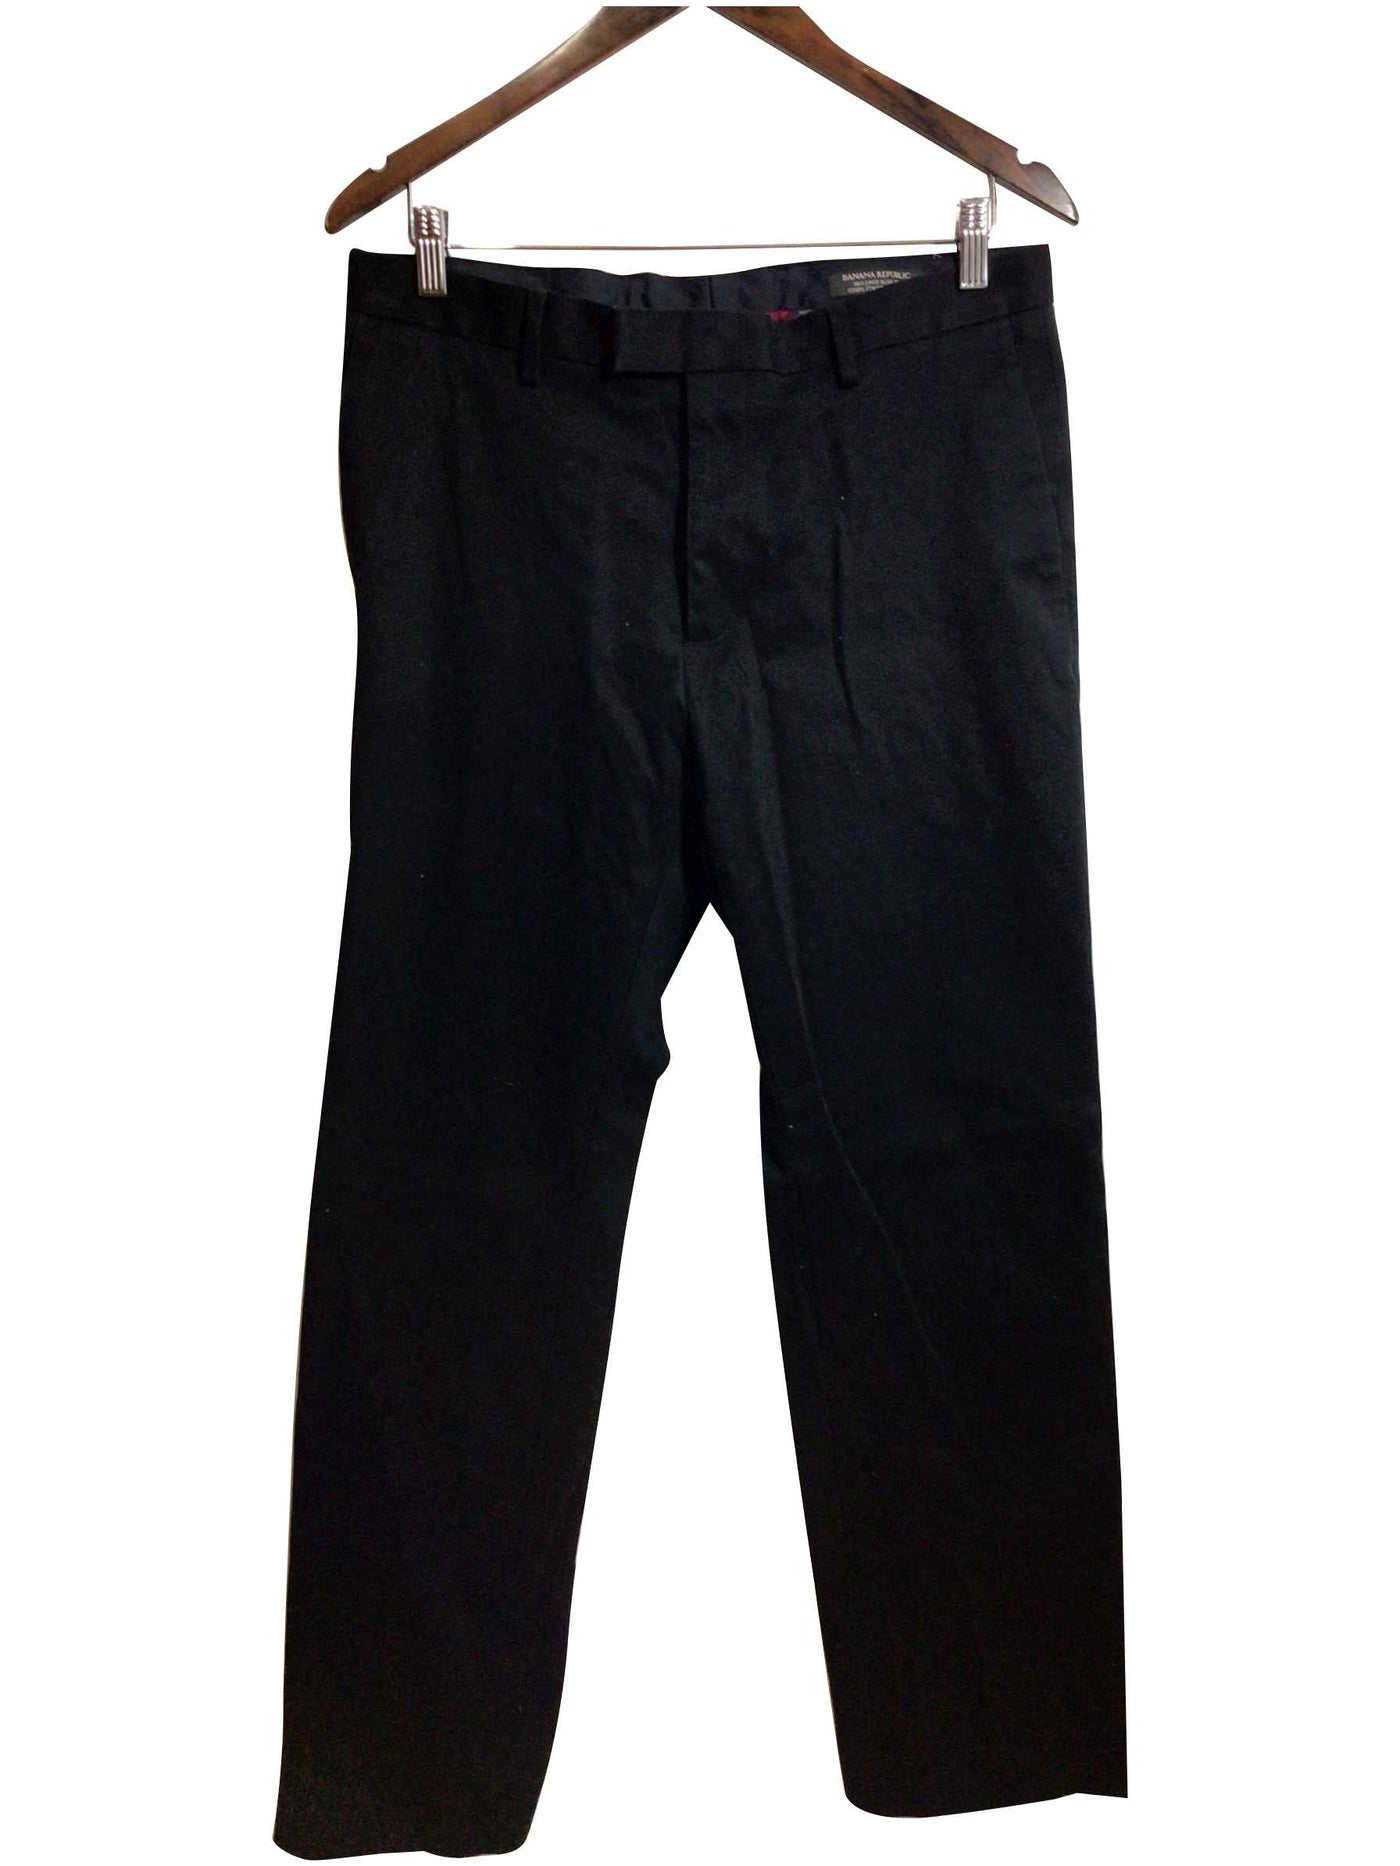 BANANA REPUBLIC Regular fit Pant in Black - 33x32   Koop